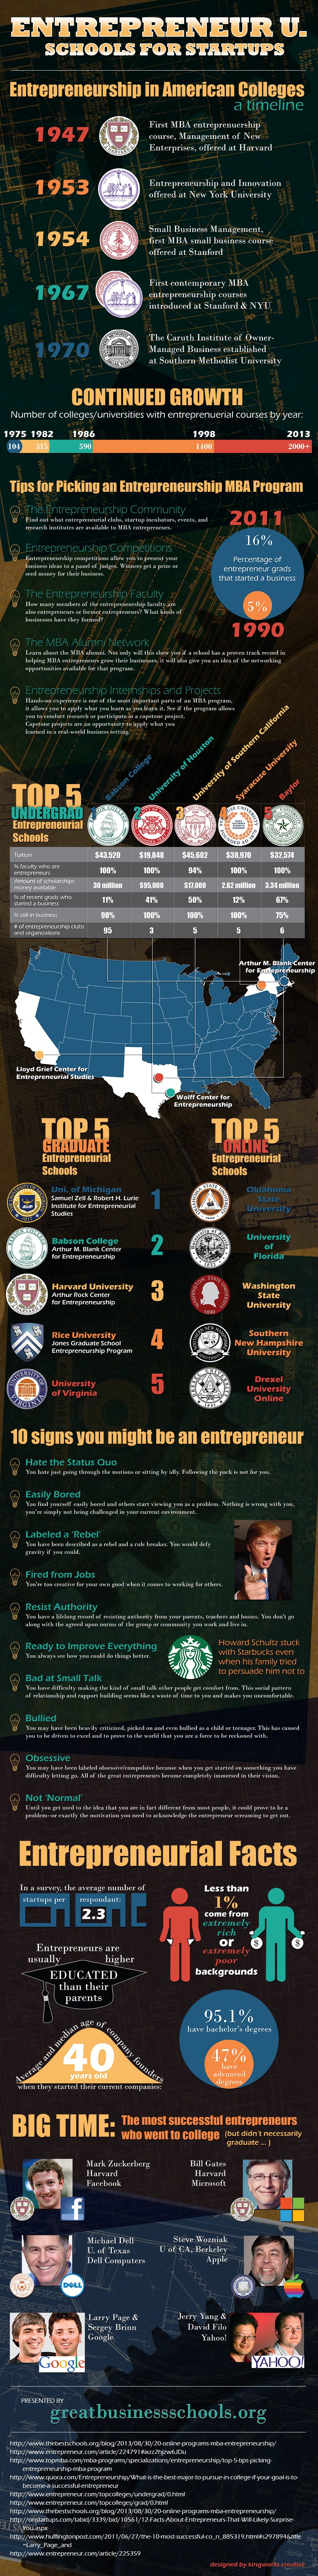 Entrepreneur Schools